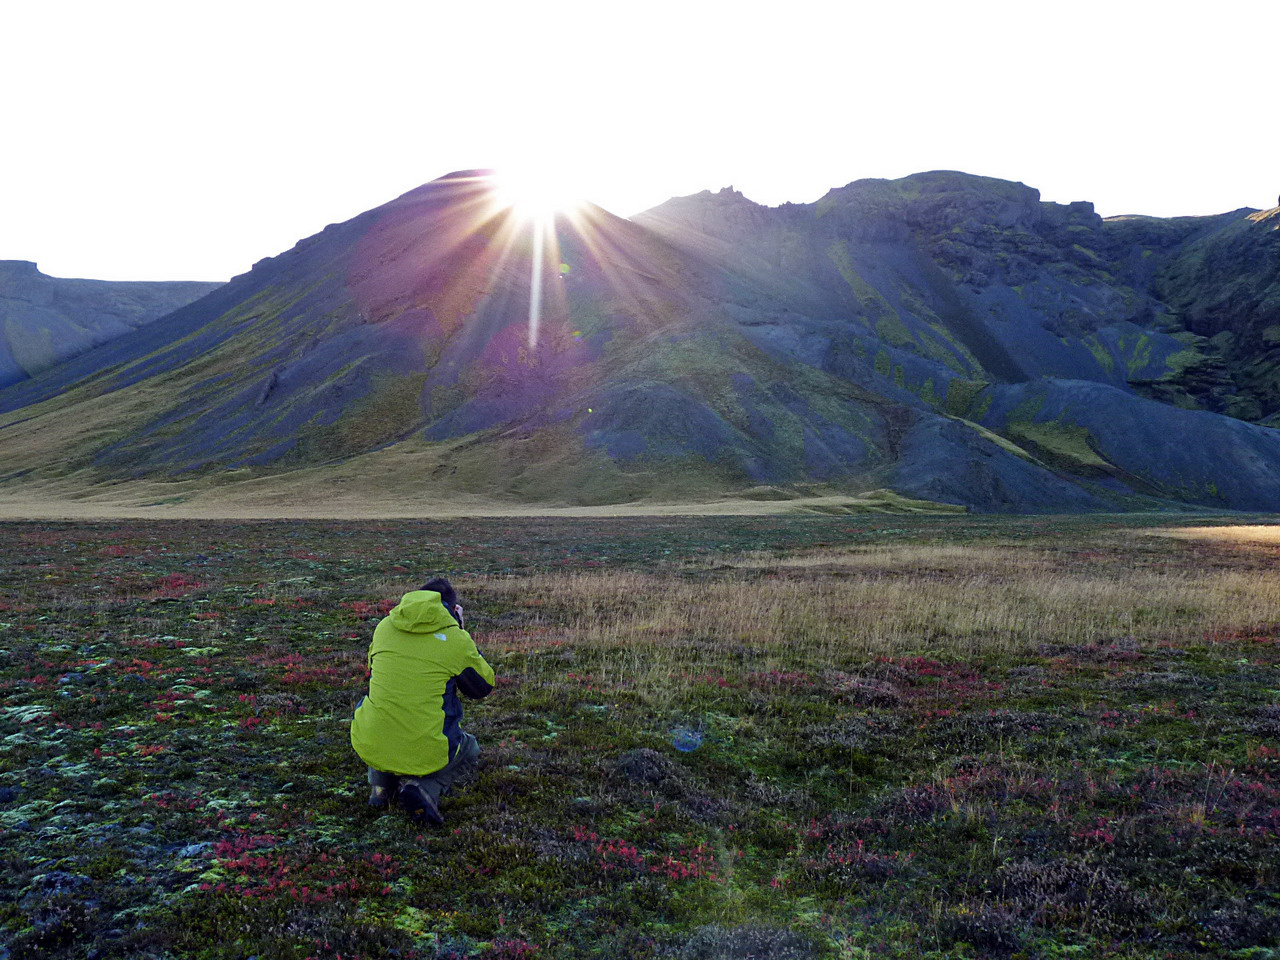 Az éltető Nap bekukkant a völgybe. Izland közvetlenül az Északi-sarkkör alatt fekszik, amiből az következik, hogy nyáron a nappalok nagyon hosszúak, szinte nincs is éjszaka, télen viszont 24 órából húszban a félhomály és a sötétség az úr. Reyjkjavíkban messze földön híres partykkal veszik fel a harcot a fényhiányos depresszió ellen